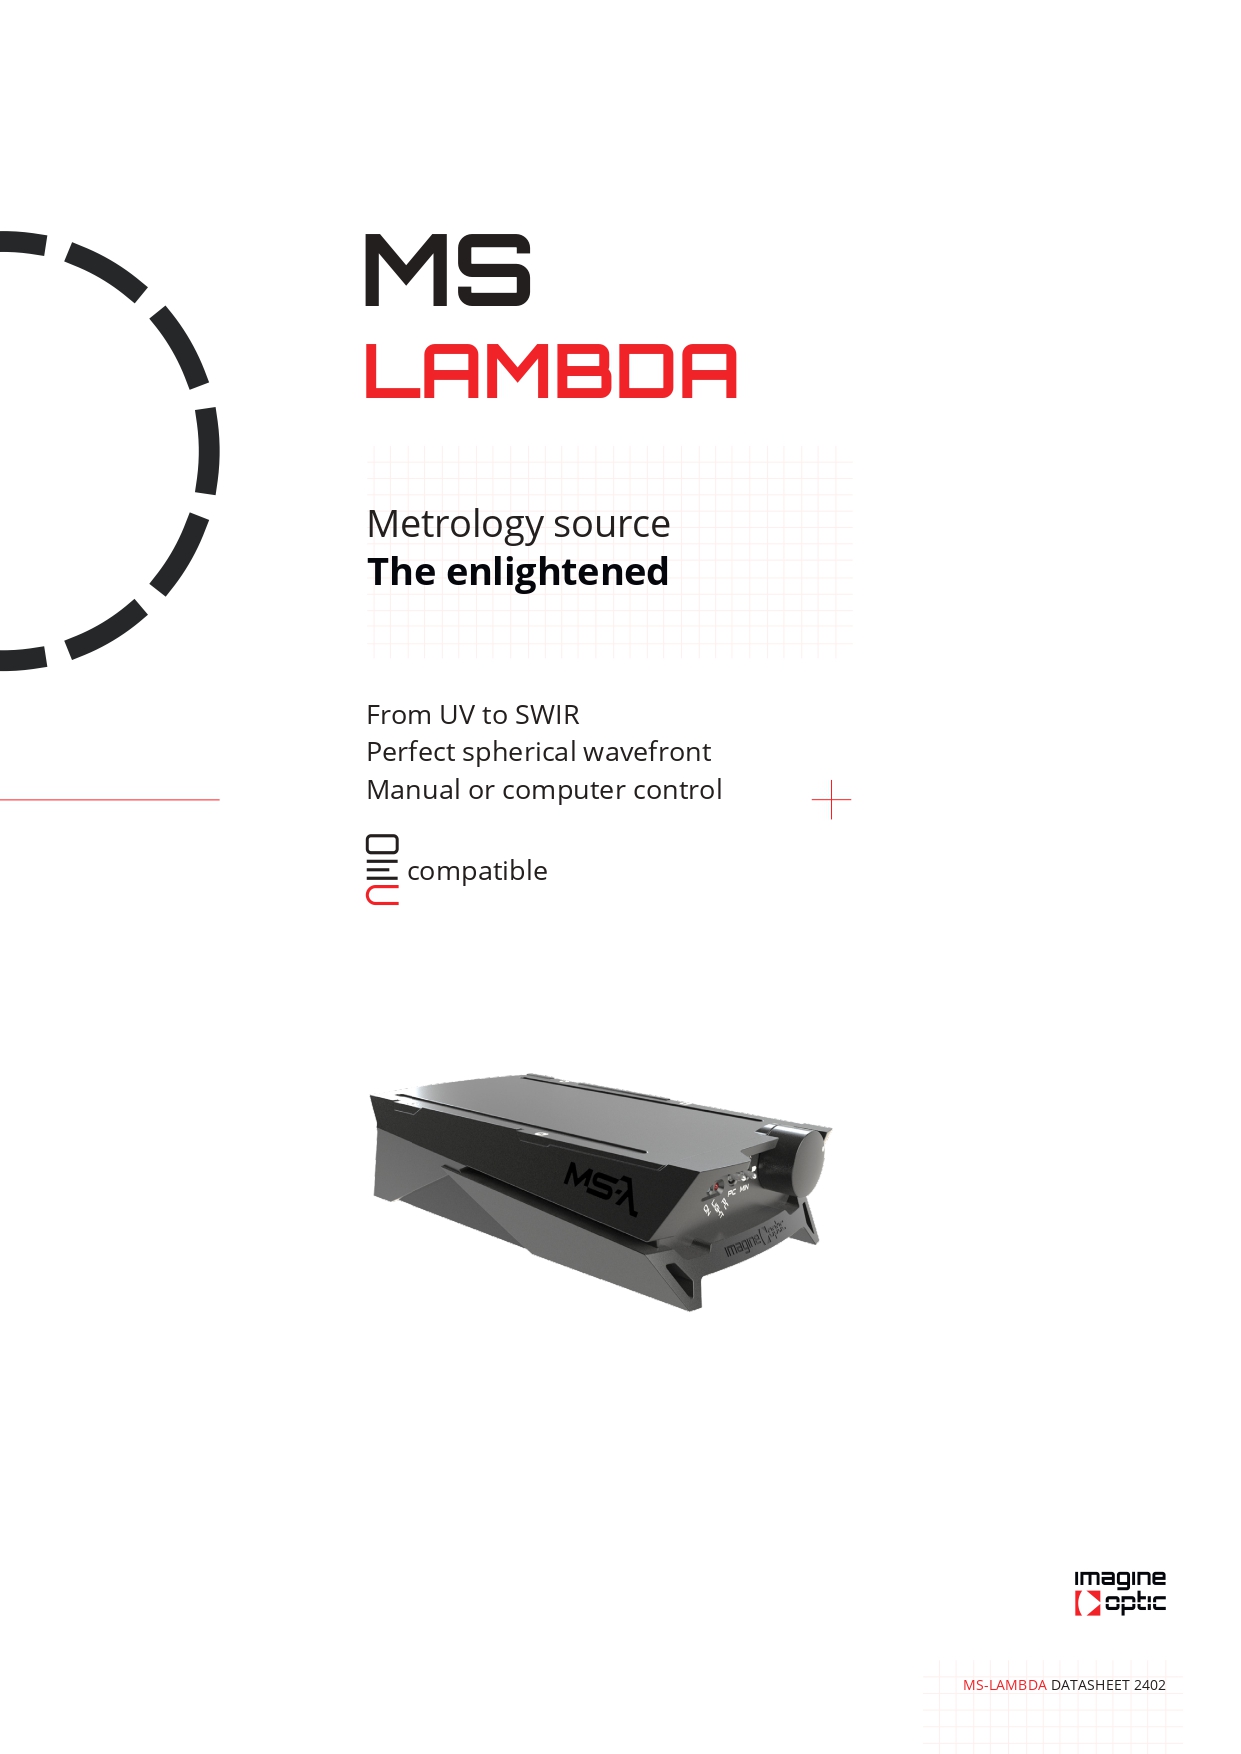 MS-Lambda metrology source